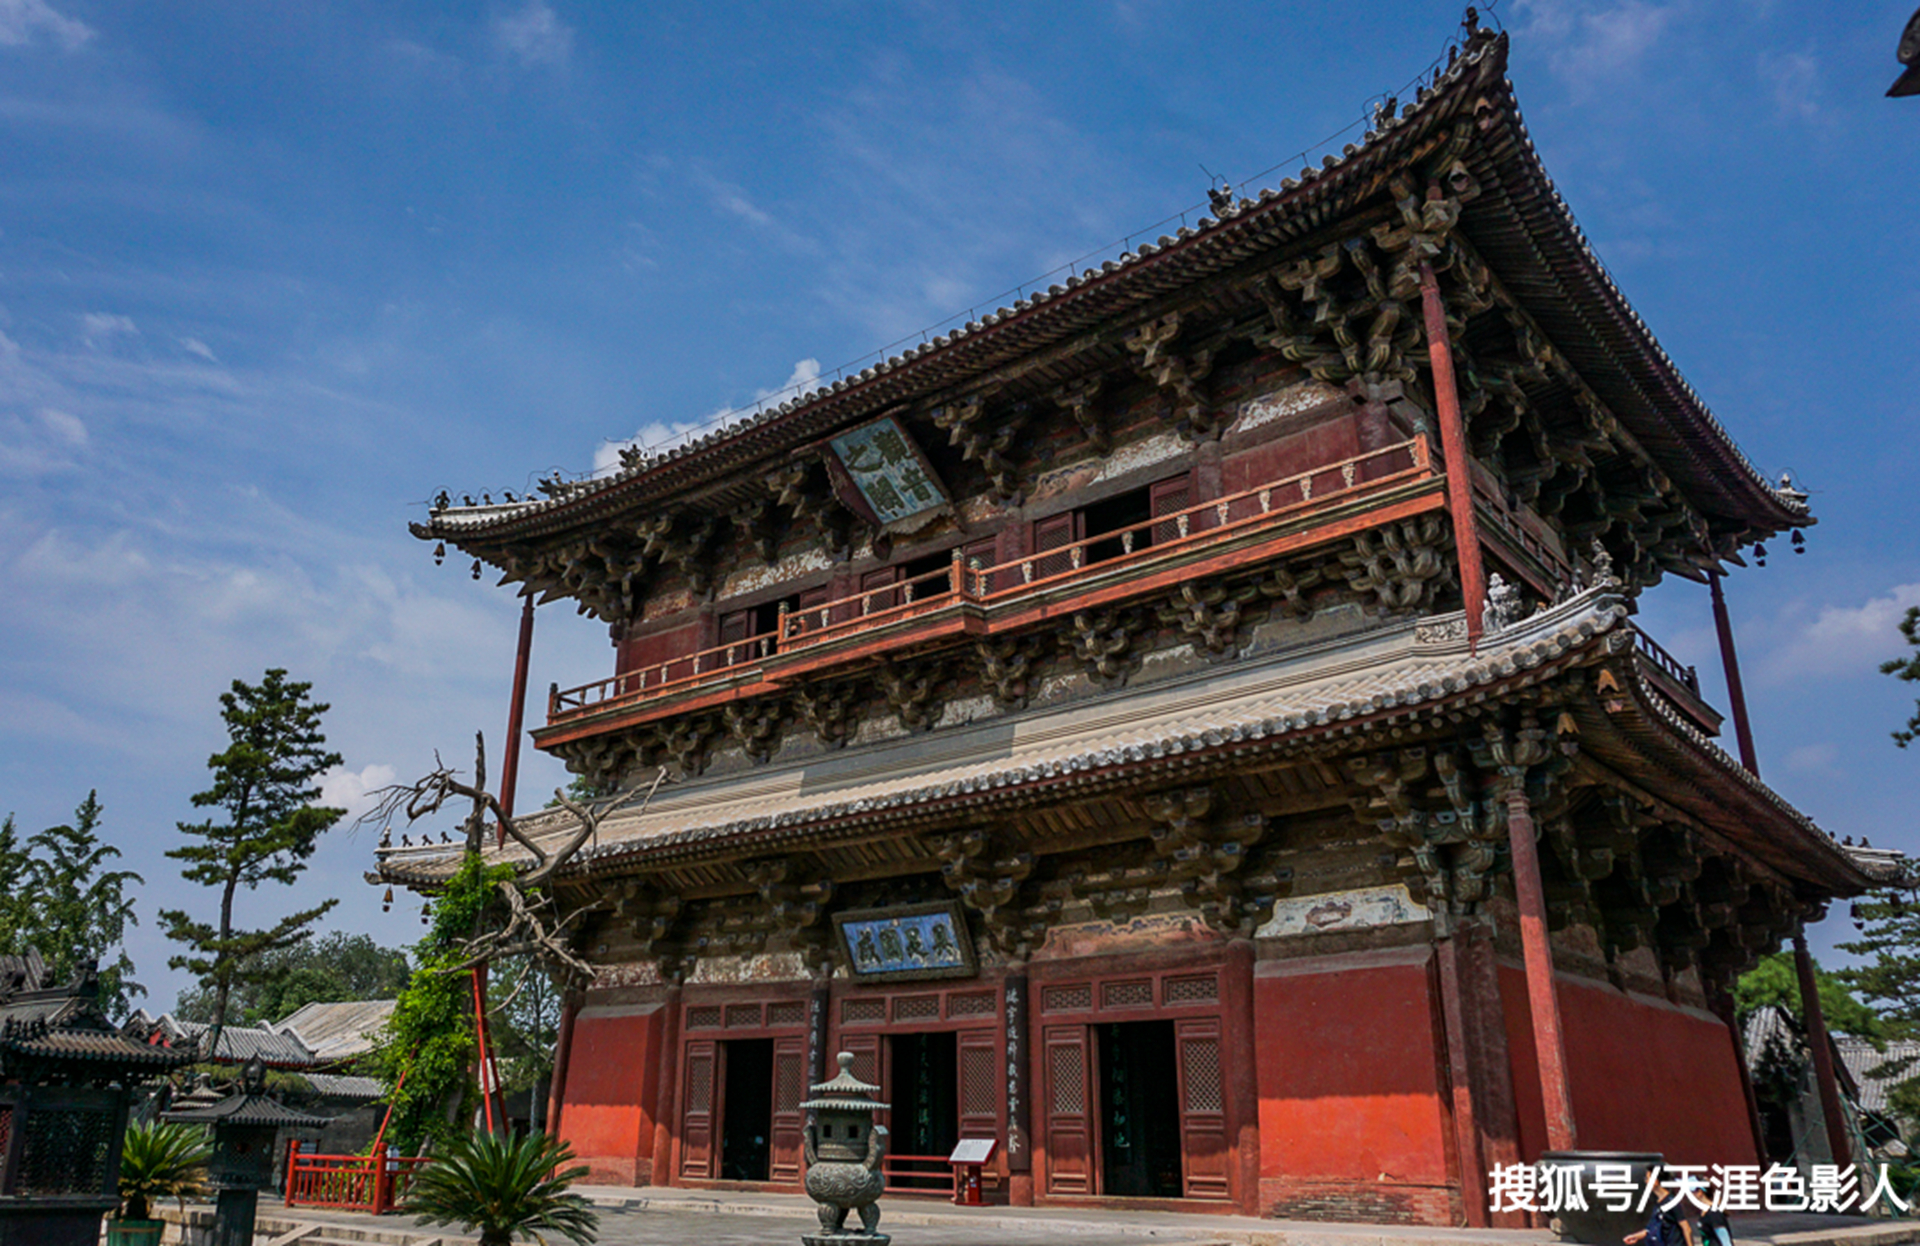 这座寺庙竟占中国古建筑的两项之最,被梁思成赞为罕有之宝物